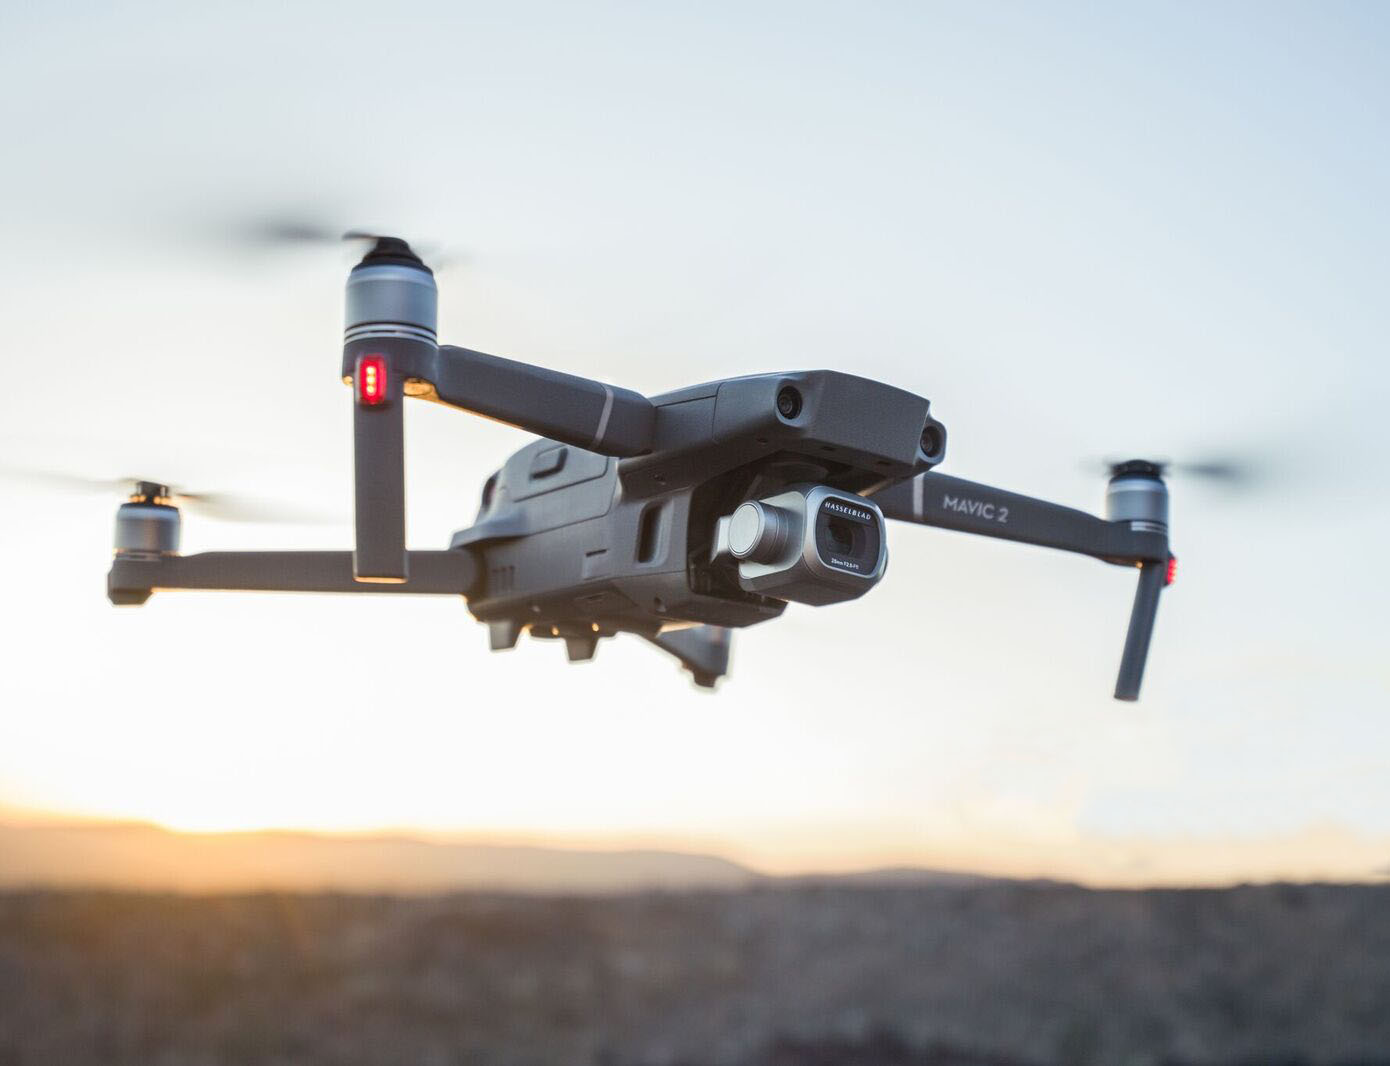  Drone mavic 2 Pro en vol